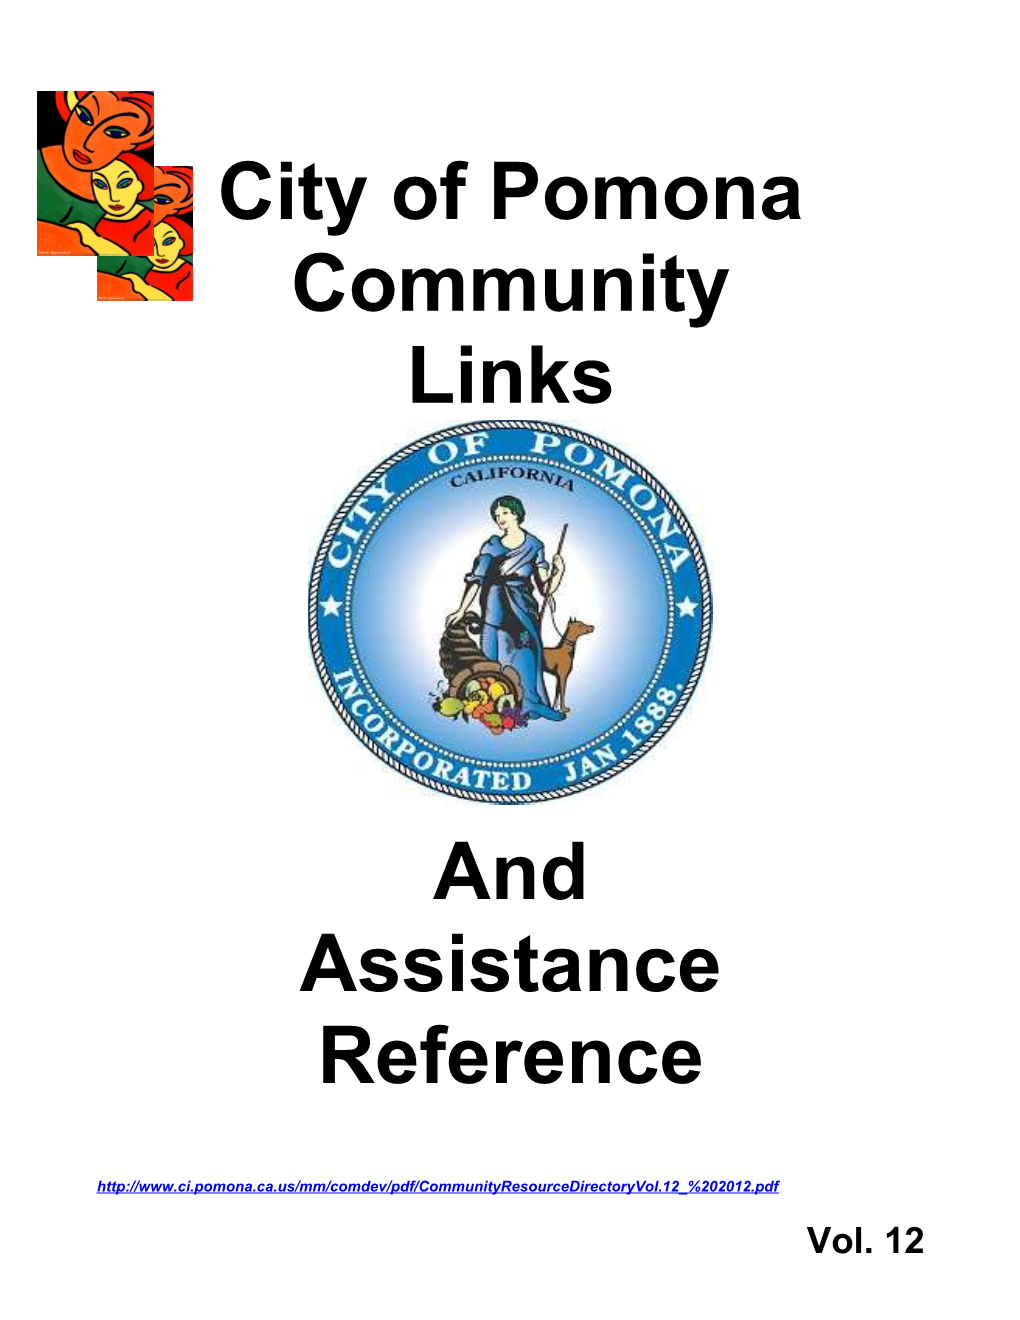 Pomona Housing Authority